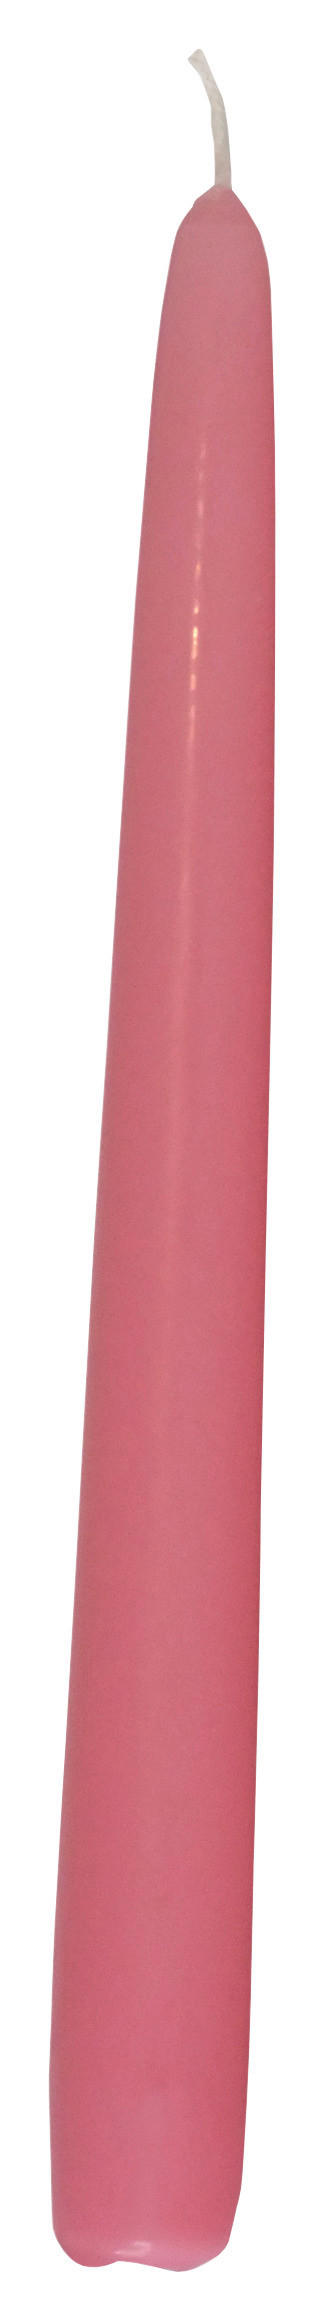  HENGERGYERTYA 24 cm  - Fáradtrózsaszín, Basics (24cm)